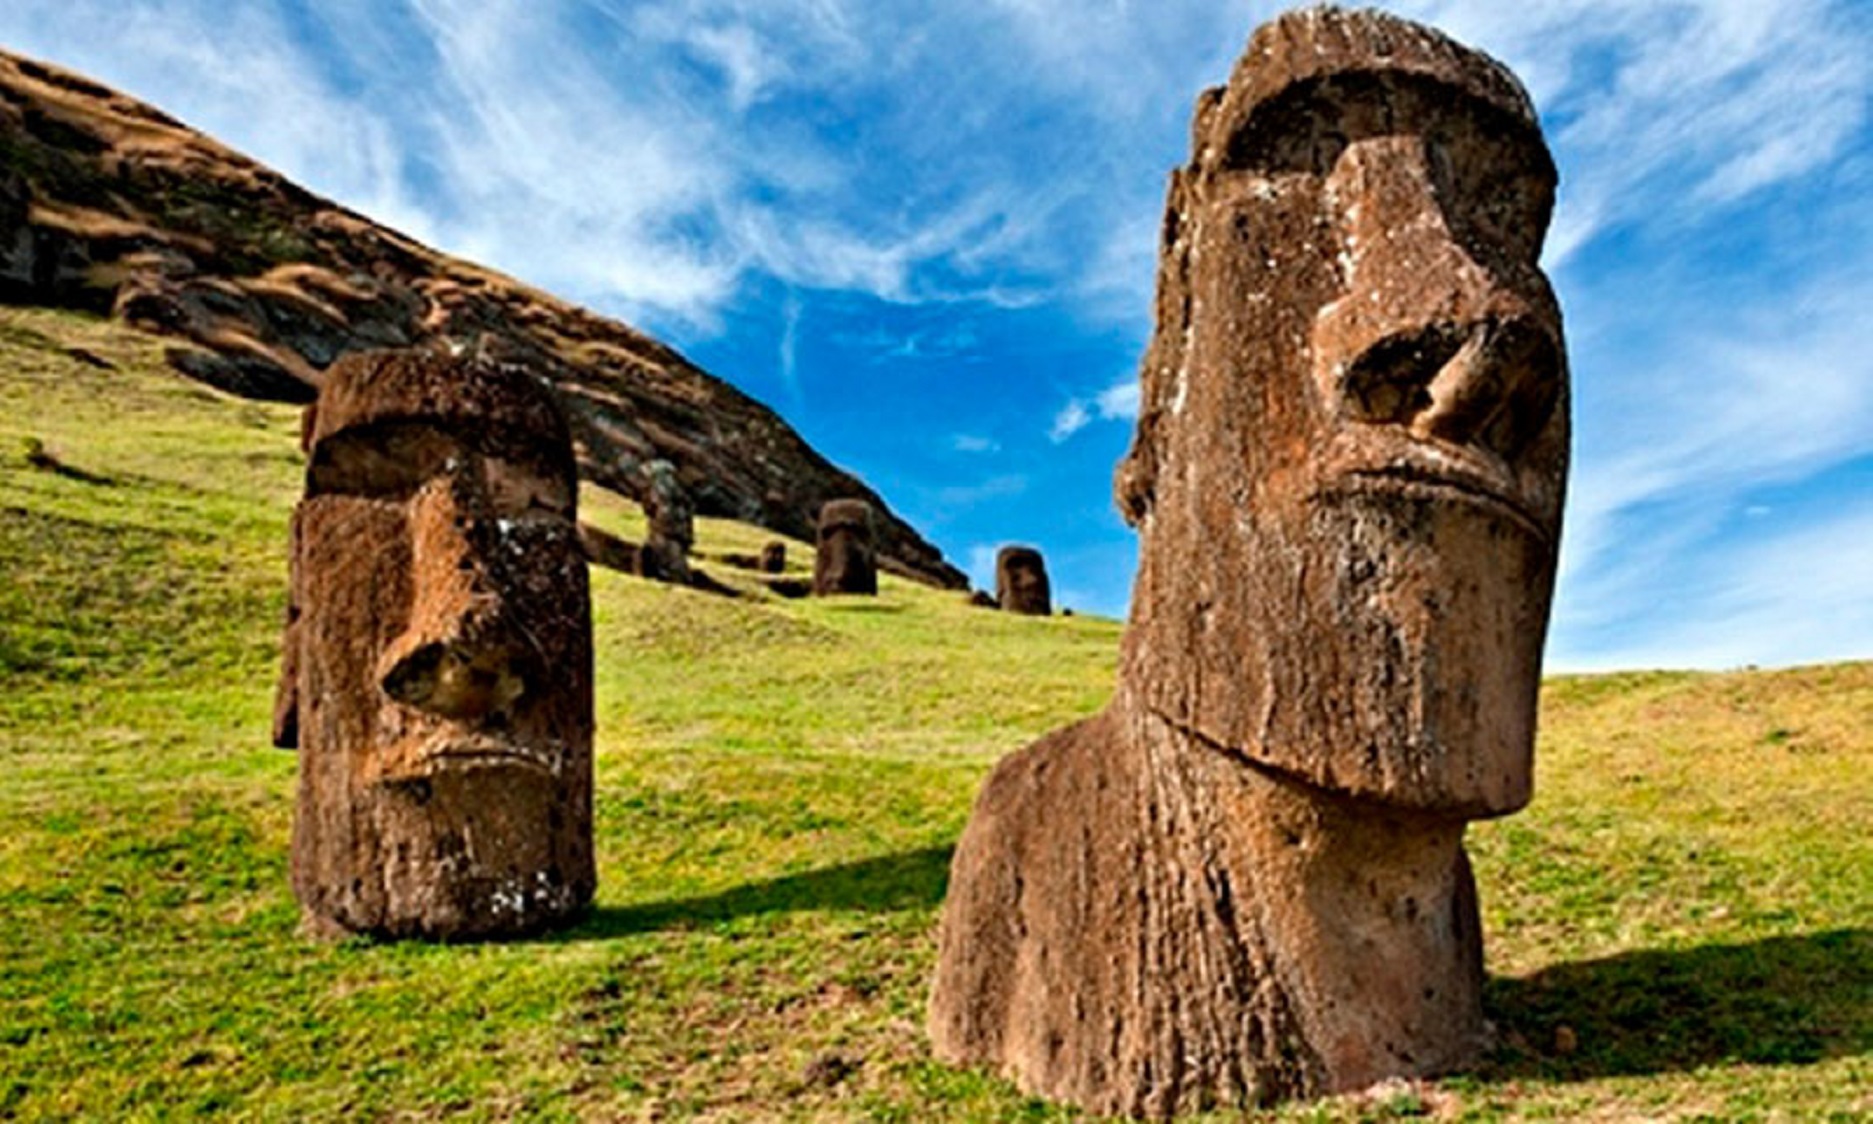  Los moai están conectados con otras estatuas megalíticas: Estudio genómico internacional revela rutas y fechas de poblamiento de la Polinesia